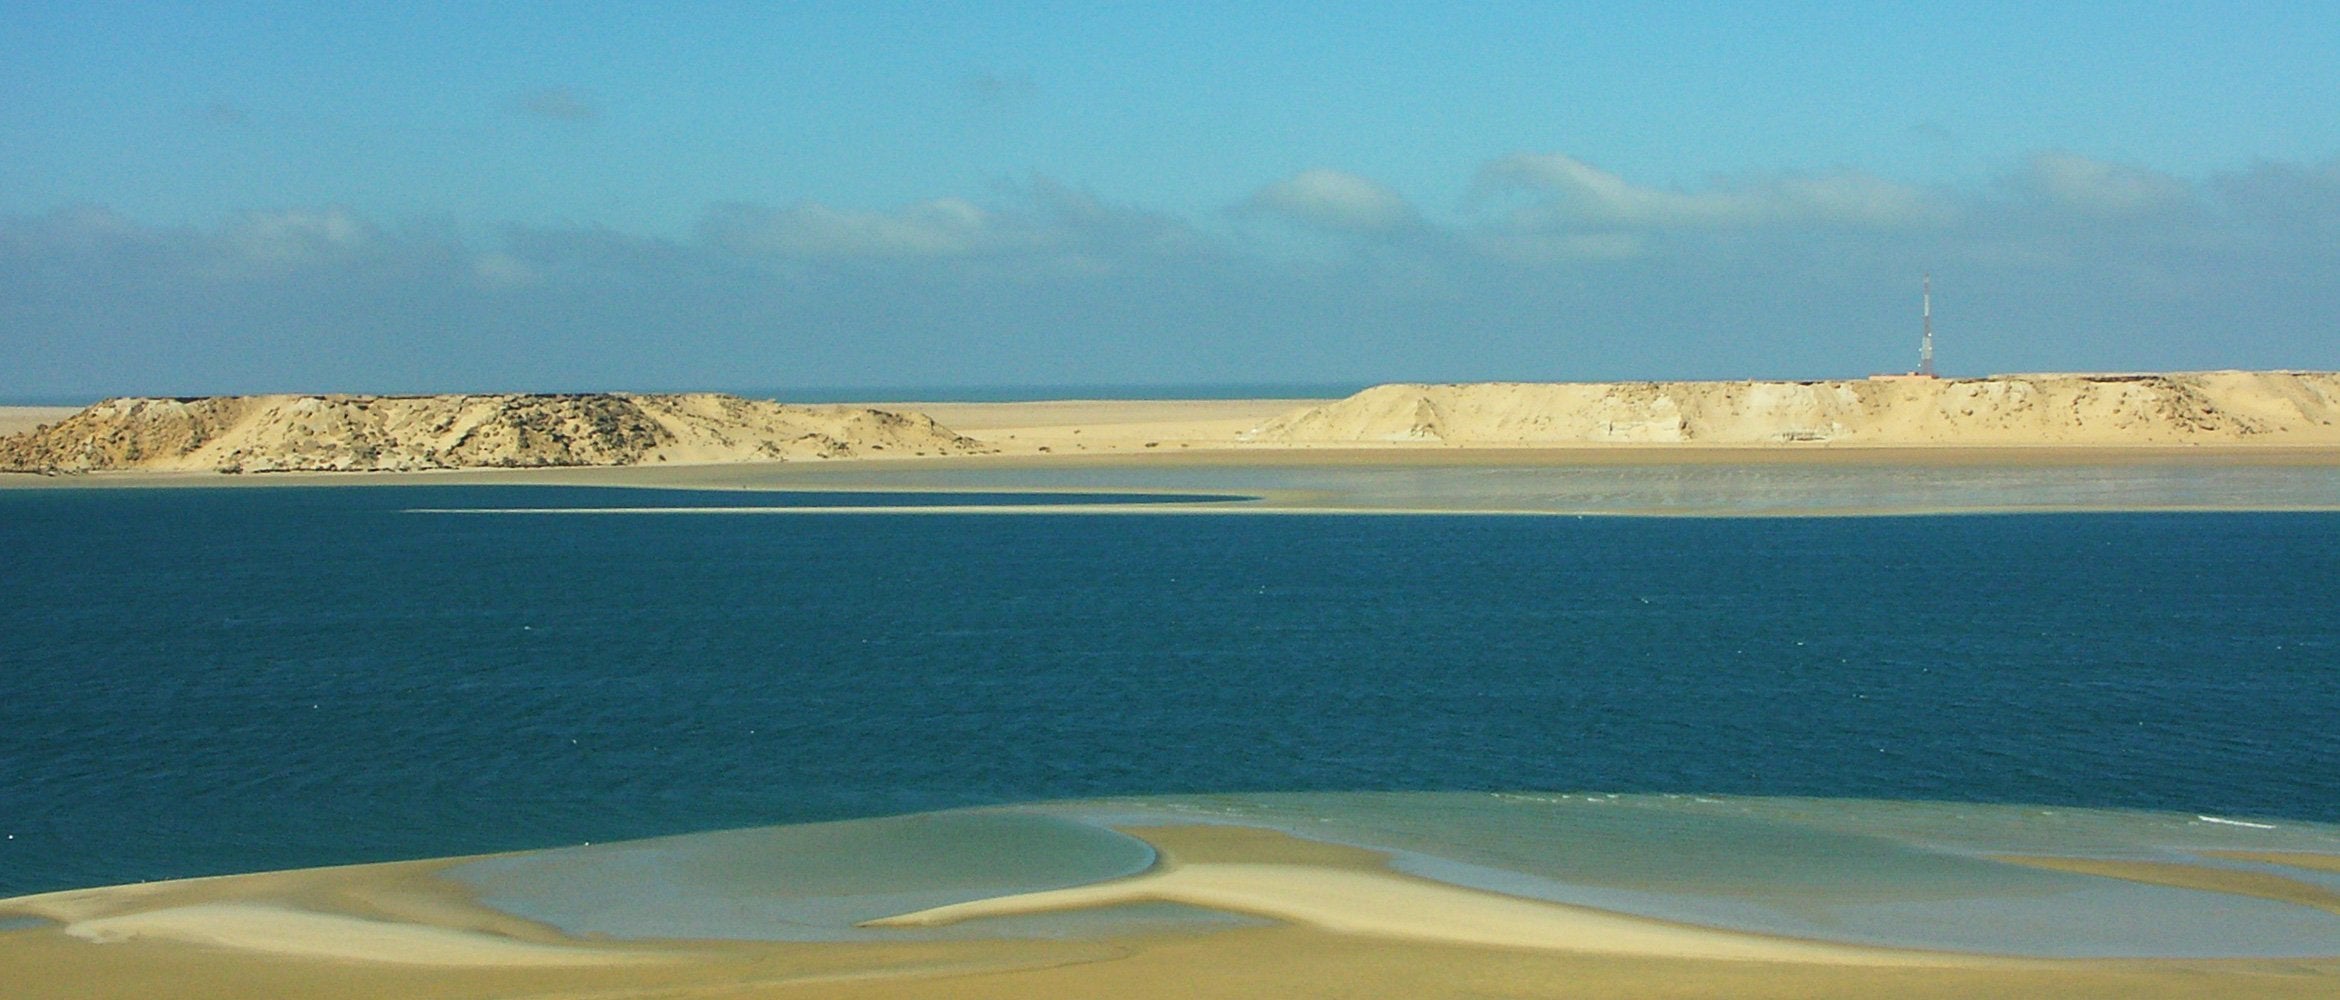 Dakhla: The Desert Kitesurf Oasis | WildBounds